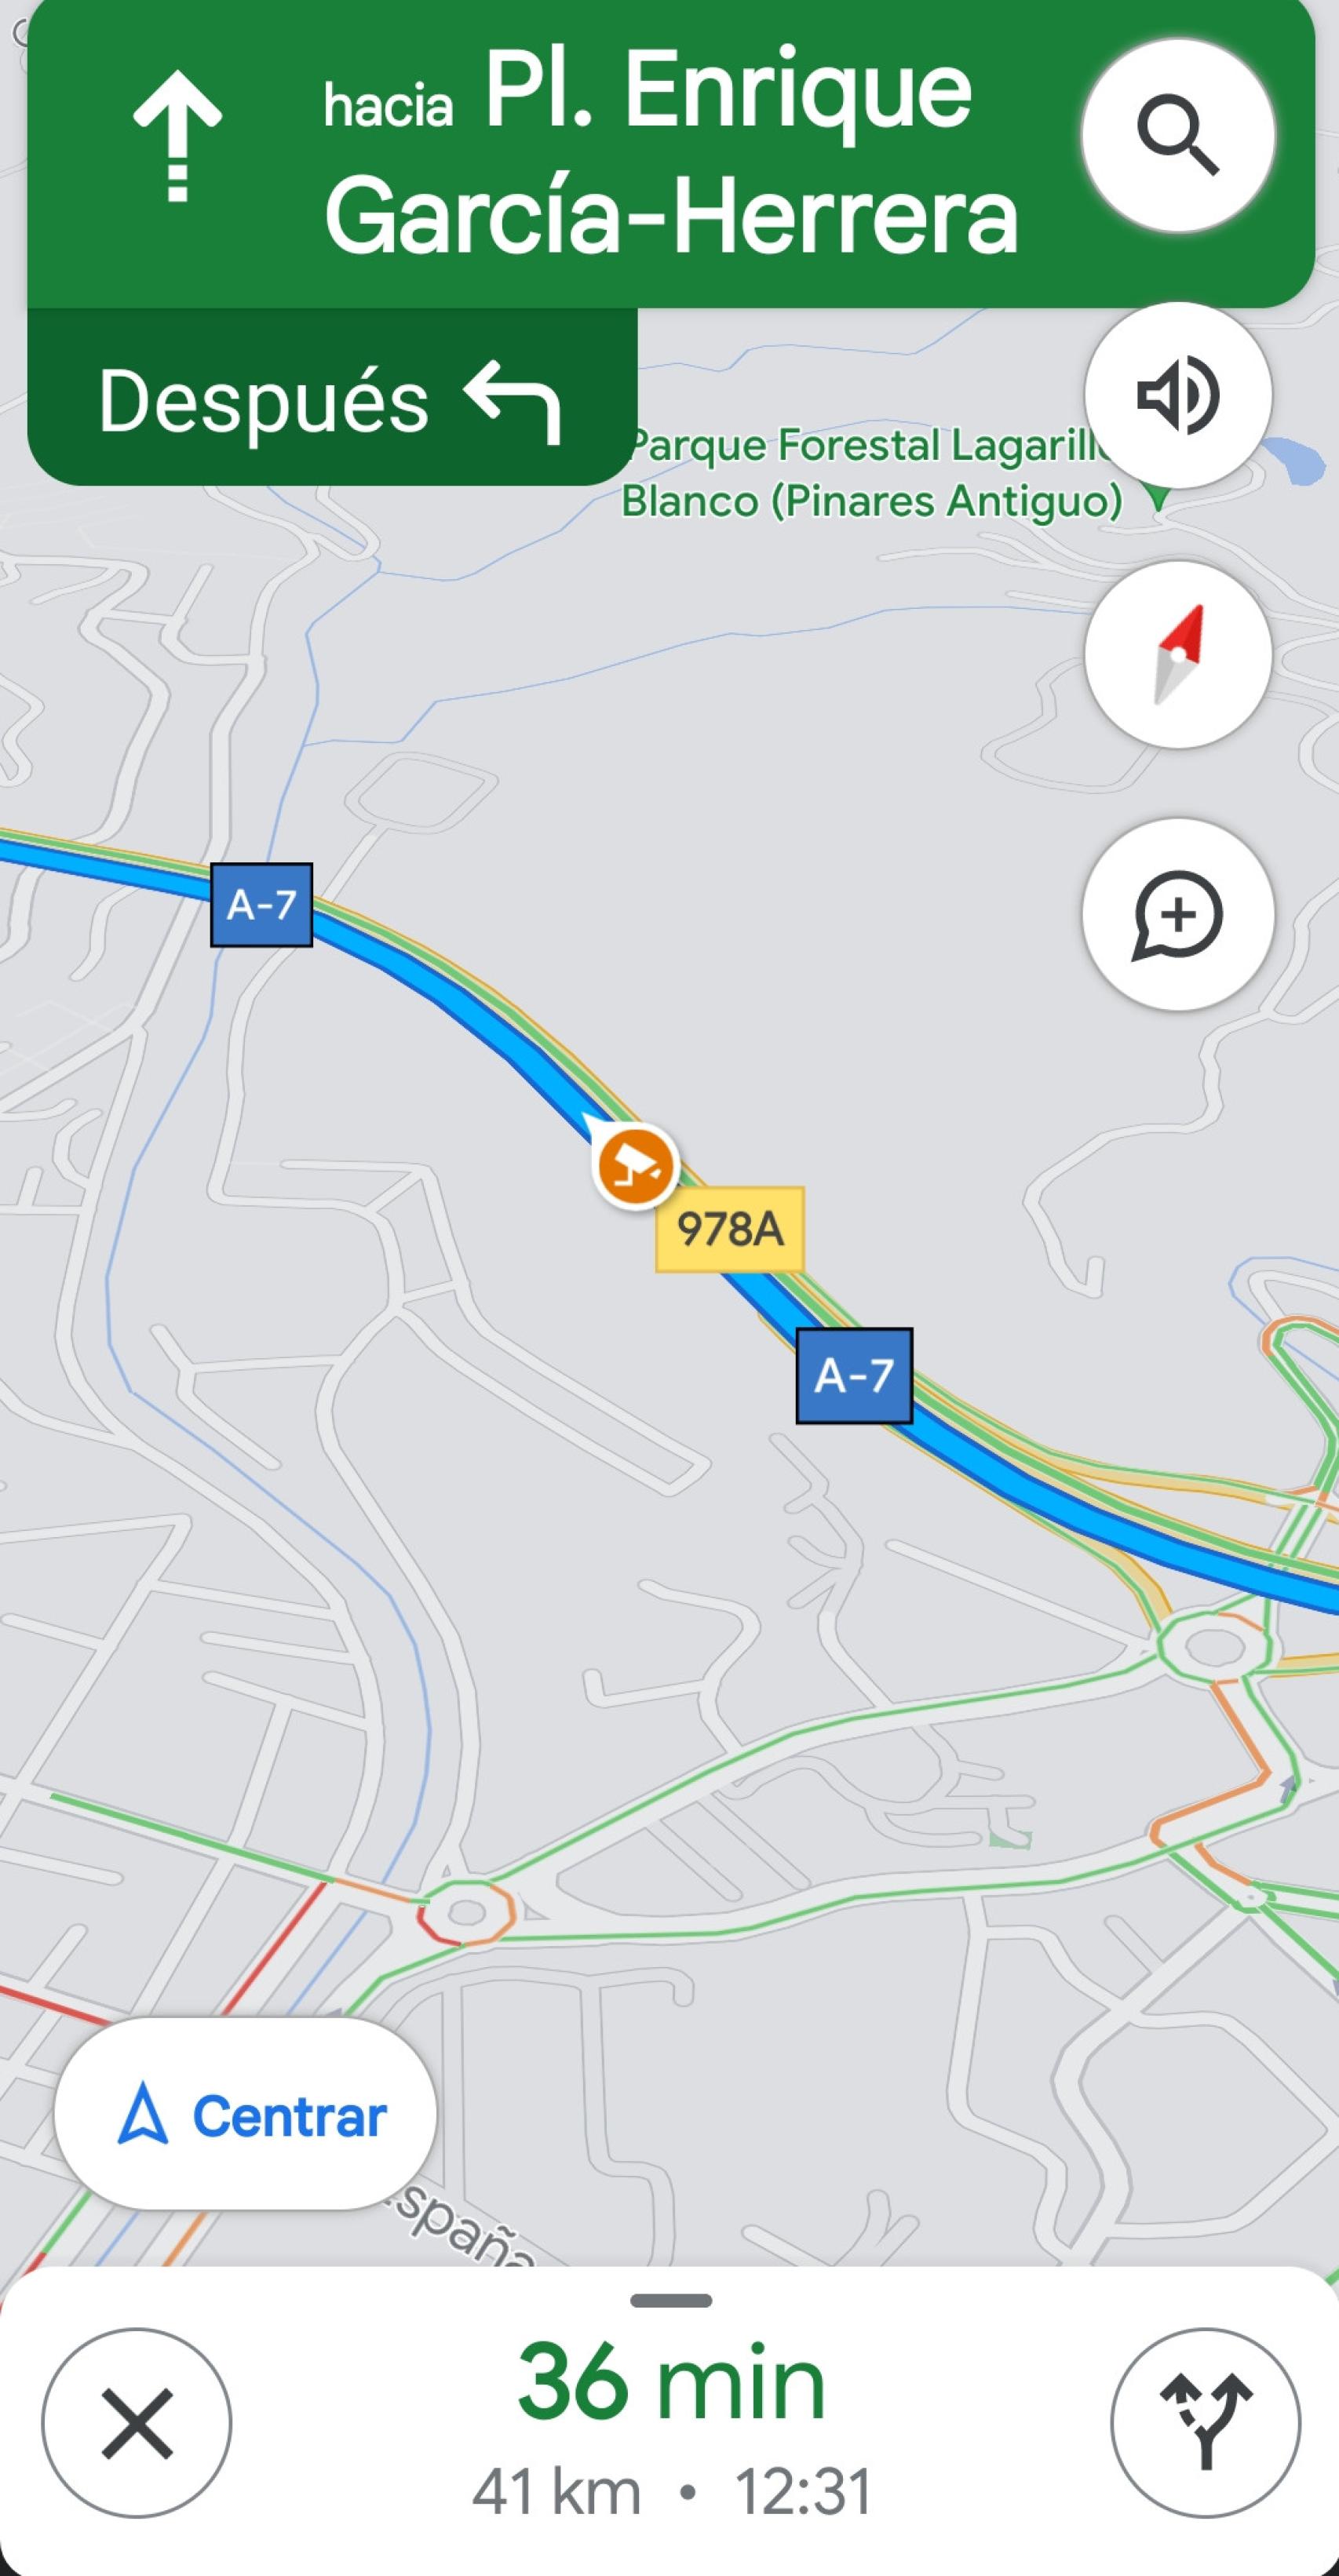 Imagen de uno de los radares localizados por la app Google Maps en las carreteras de Málaga.